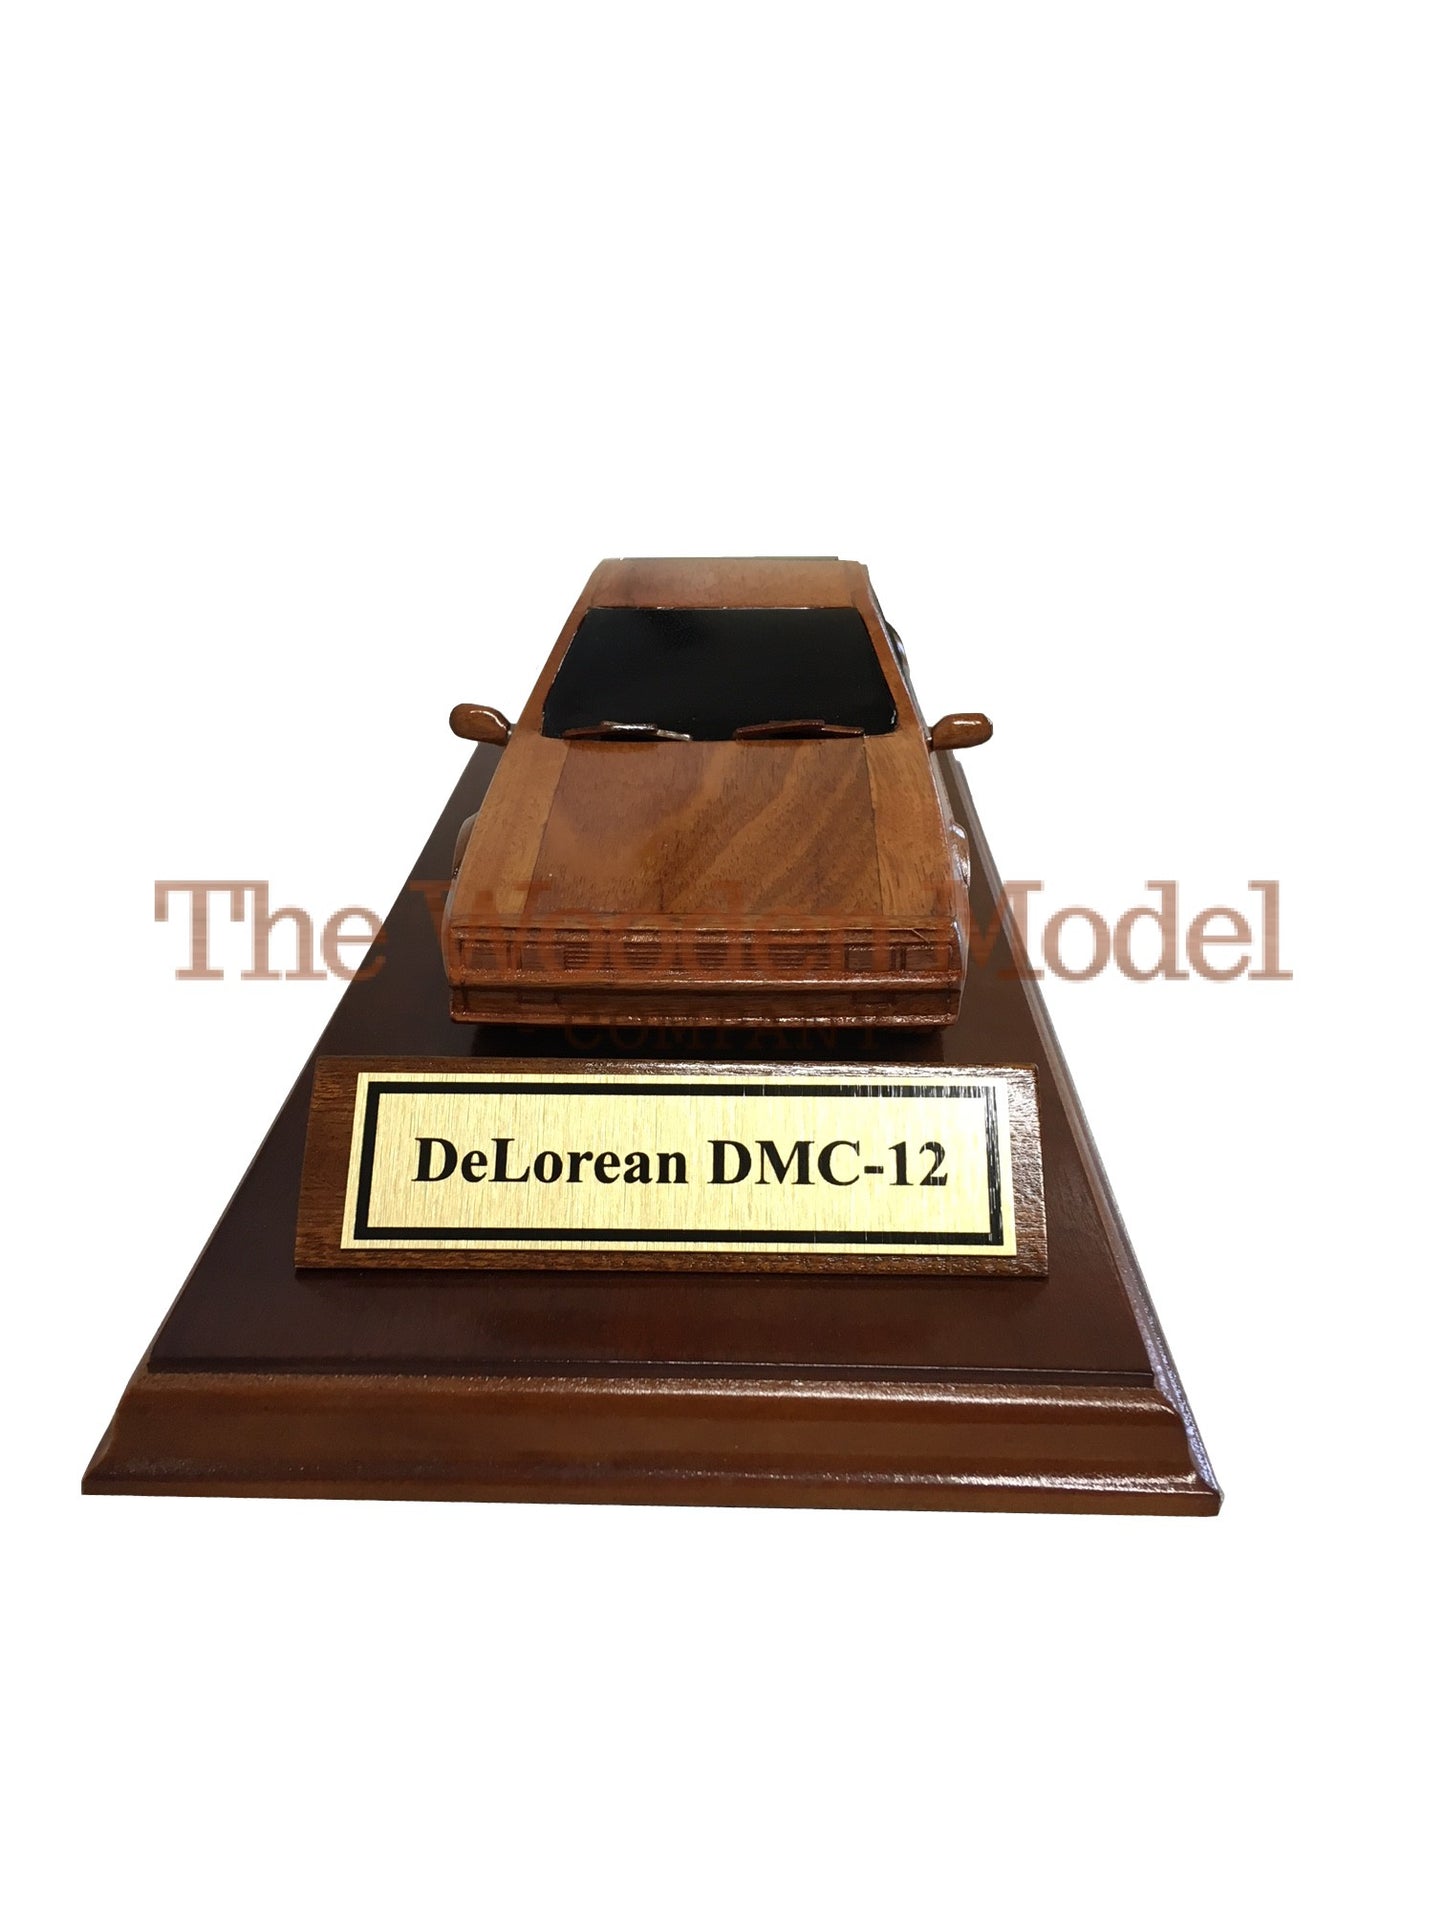 DeLorean DMC-12 On A Wooden Plinth.